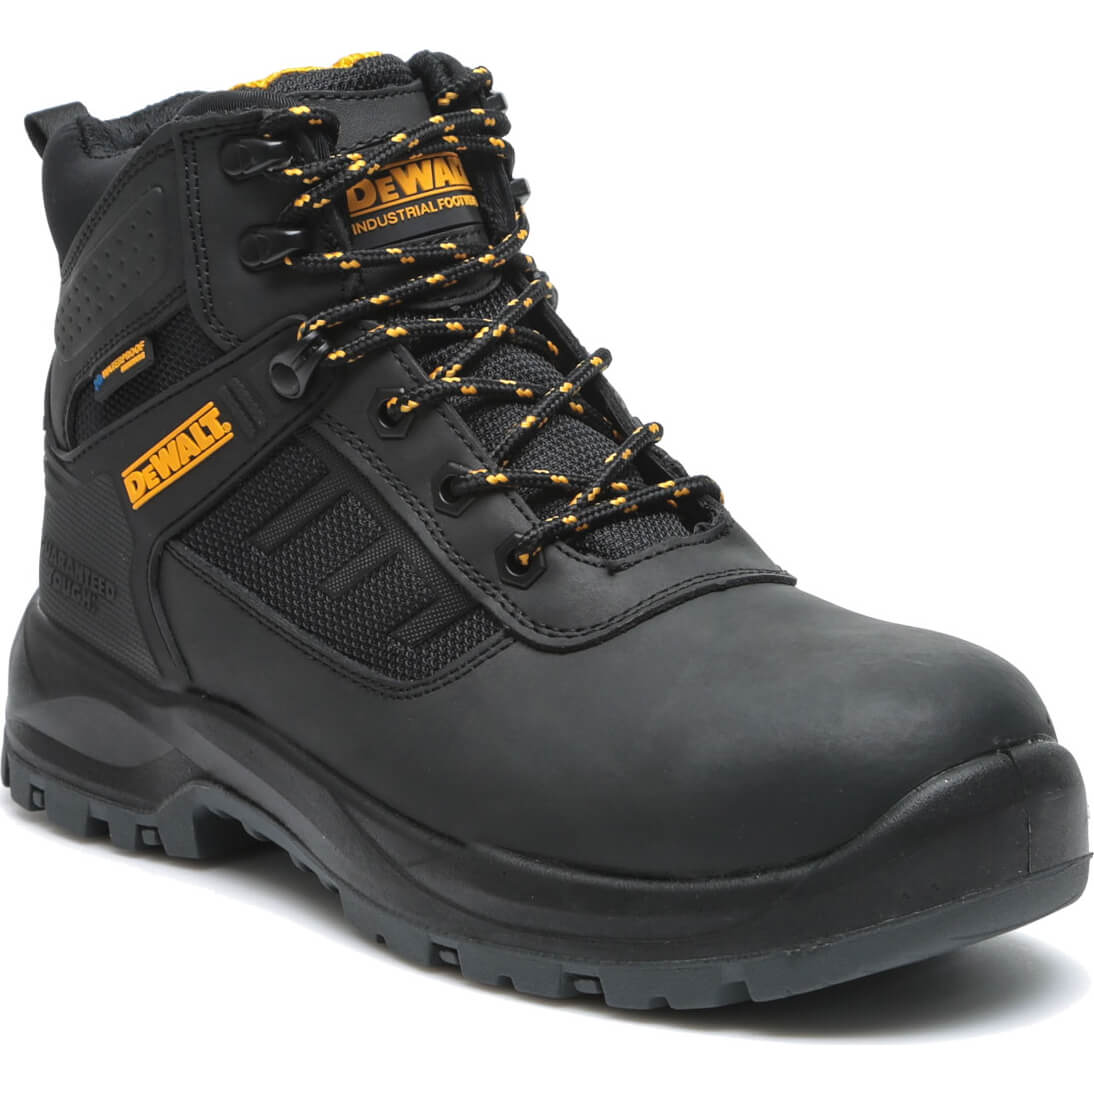 Photos - Safety Equipment DeWALT Douglas Waterproof Safety Boots Black Size 9 